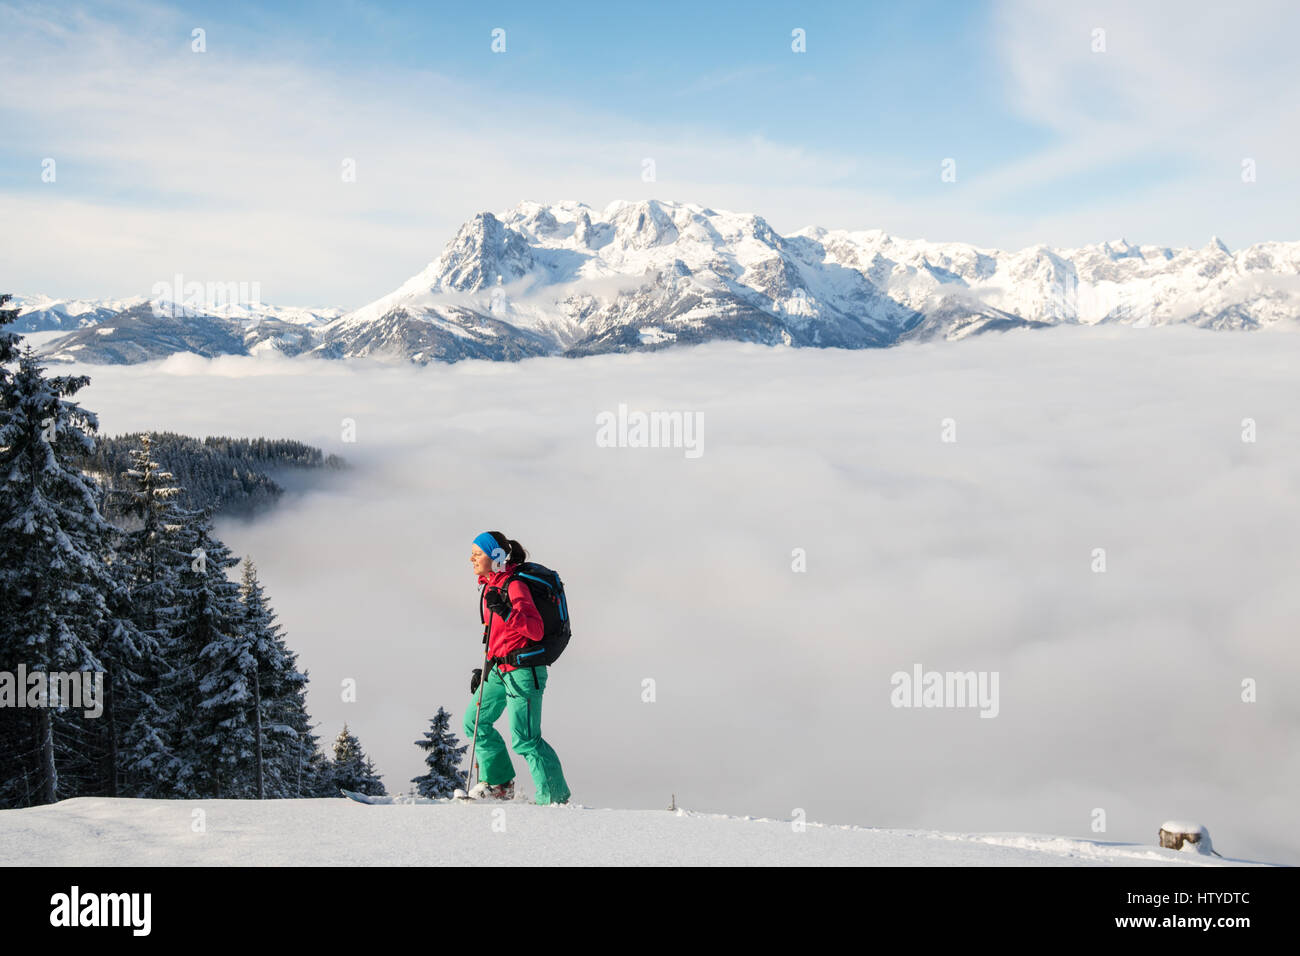 Frau auf Skiern, Salzburg, Österreich Stockfoto